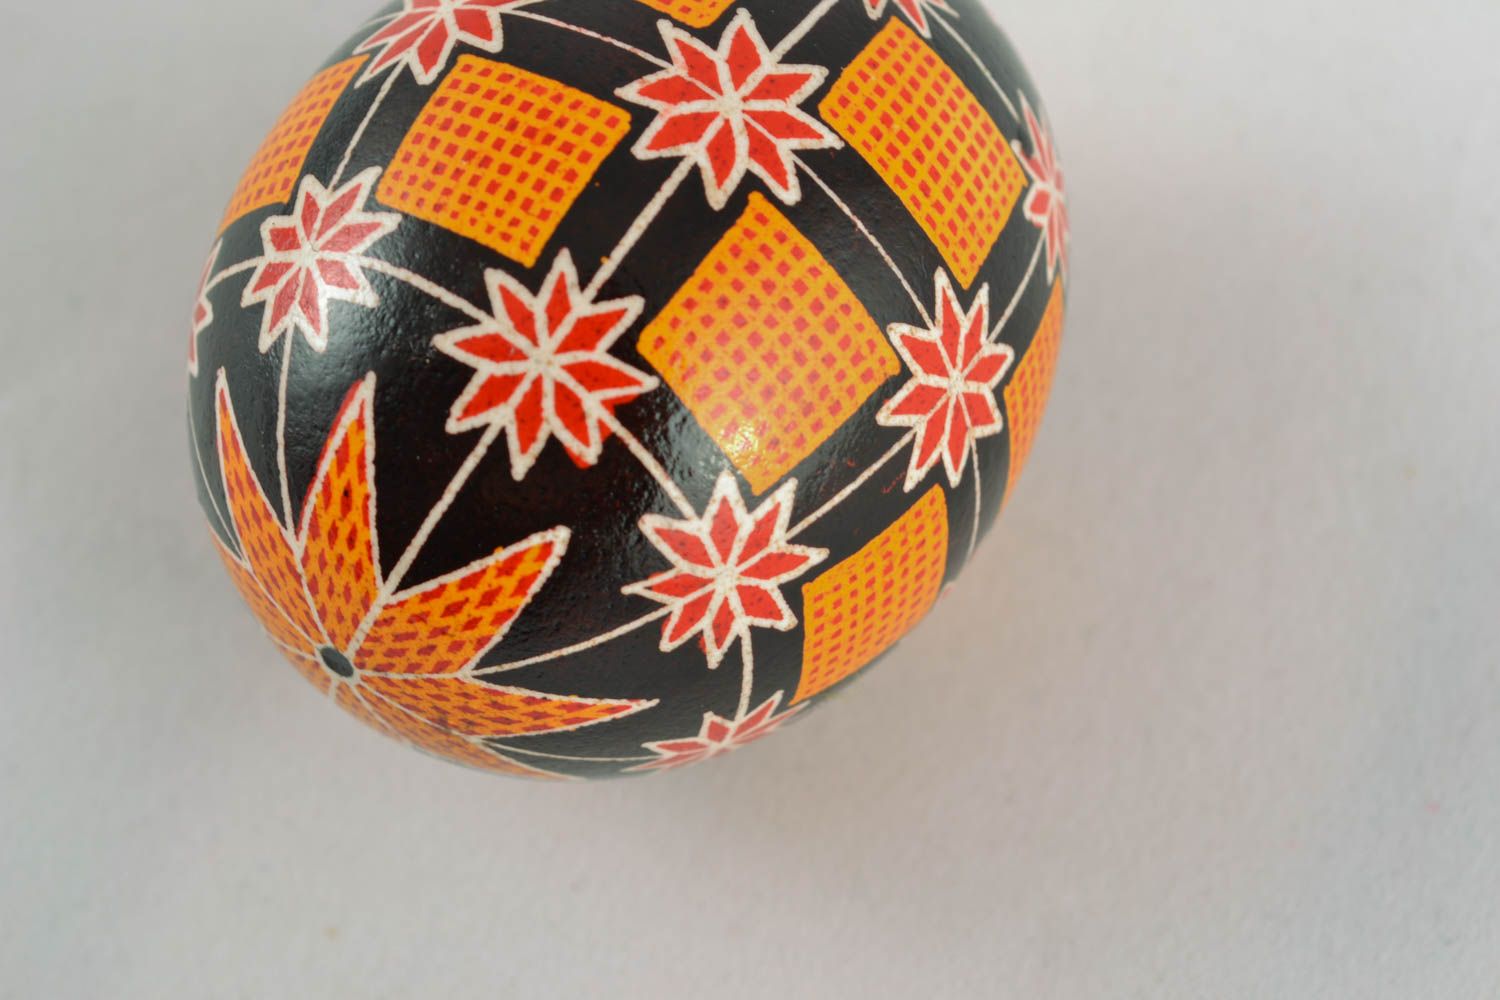 Handmade Easter egg photo 2